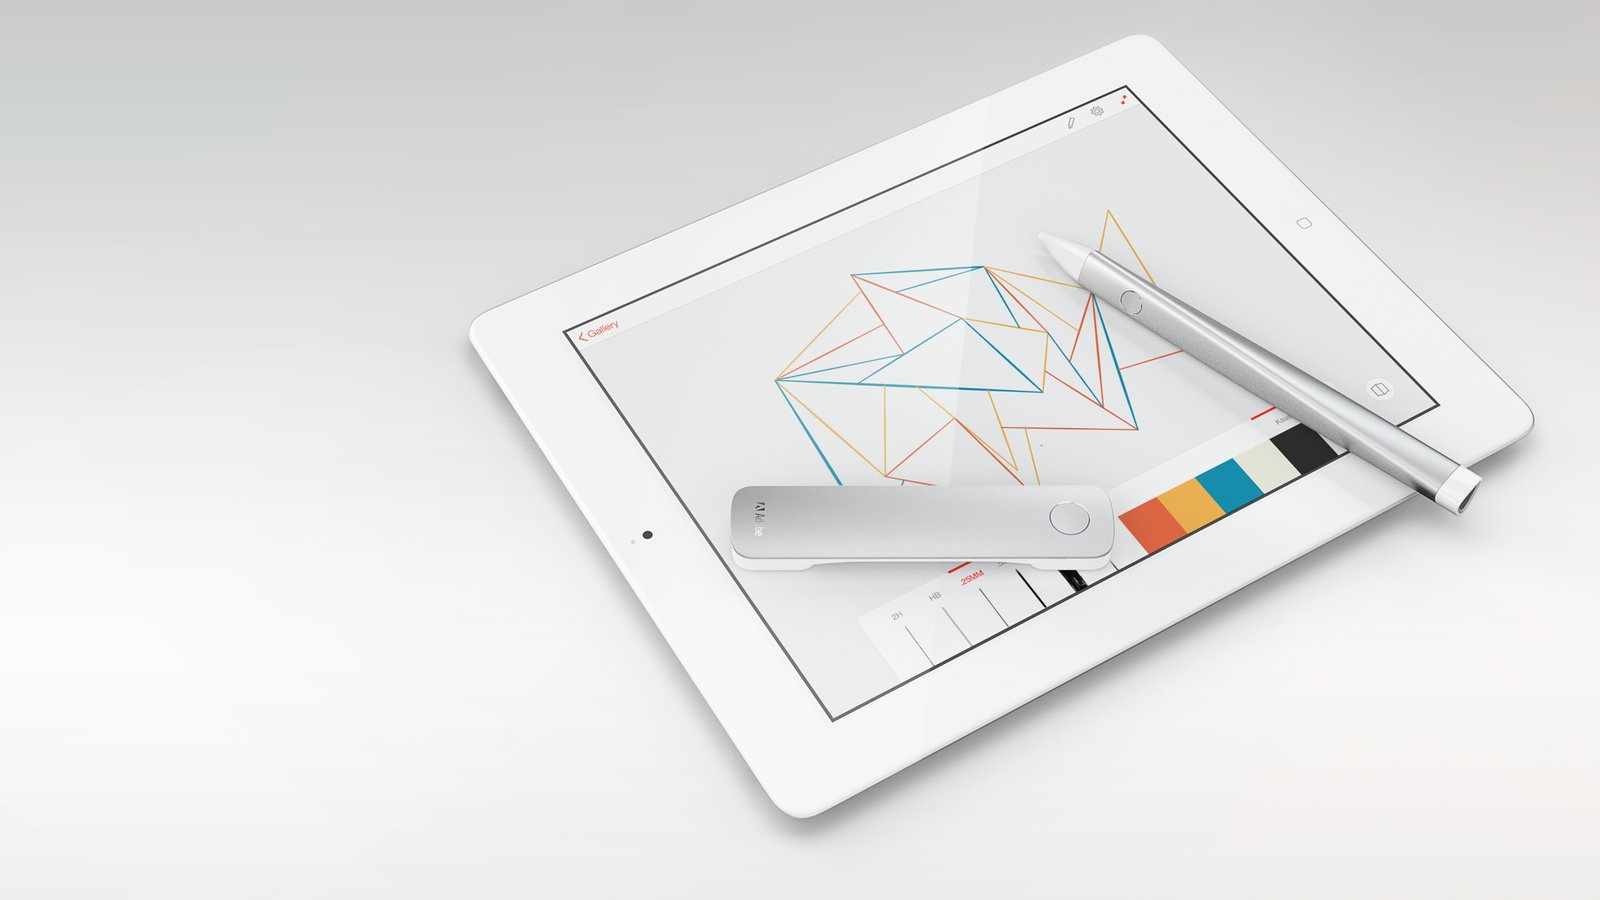 [A venir] Adobe prépare le lancement d'un duo stylet + règle pour iPad  2